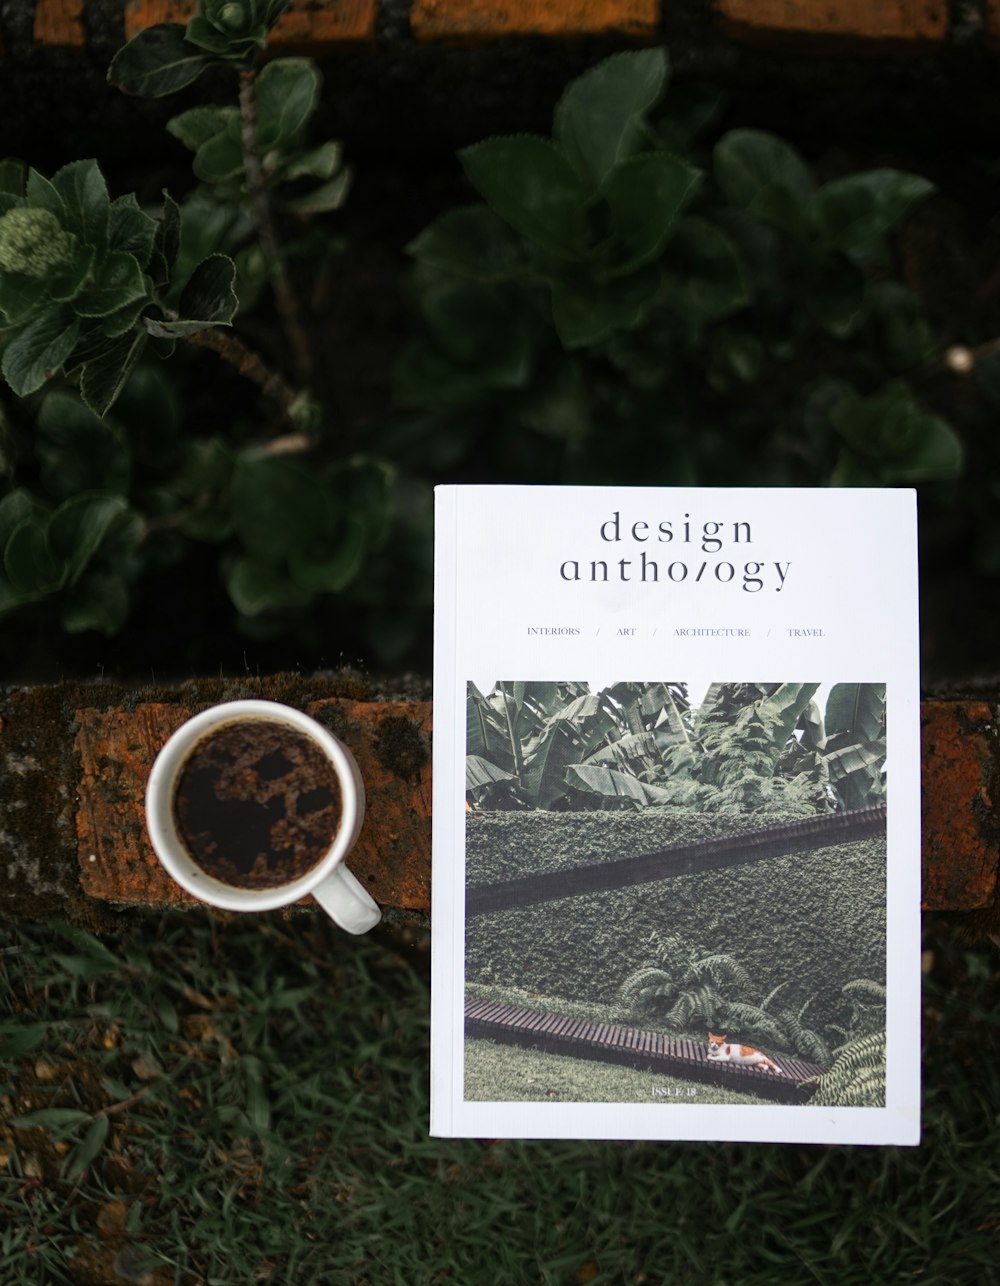 Livro de antologia de design